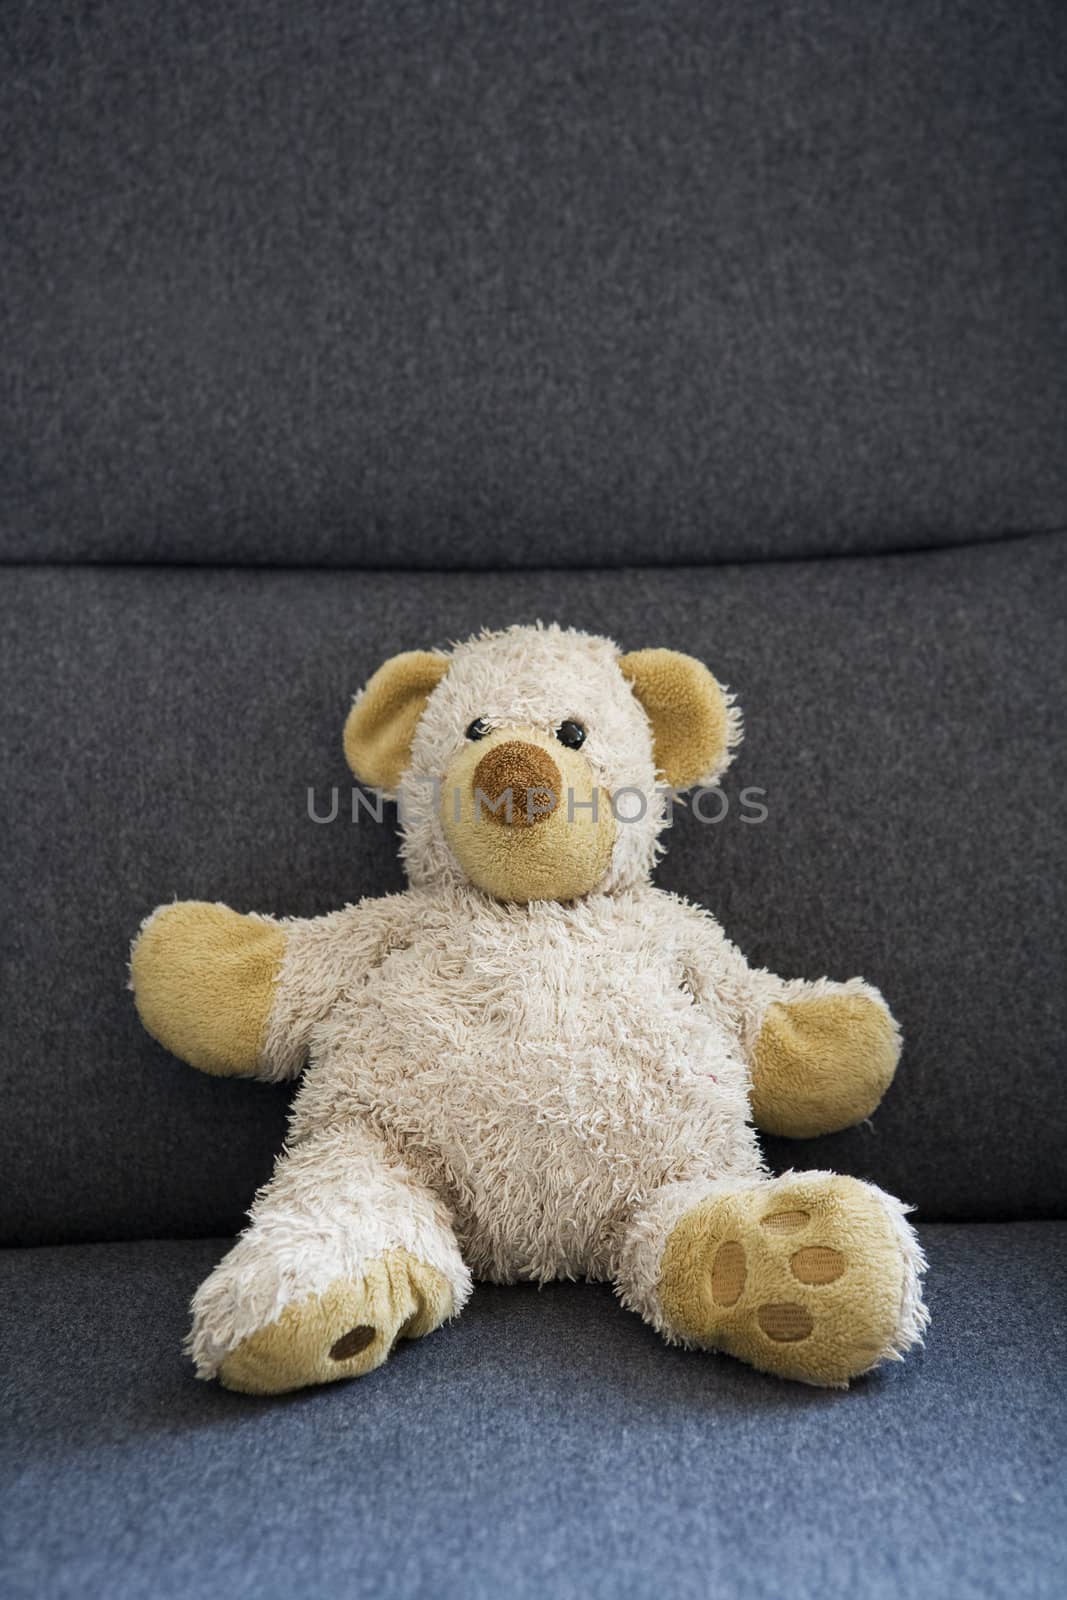 Single Teddybear sitting in a chair